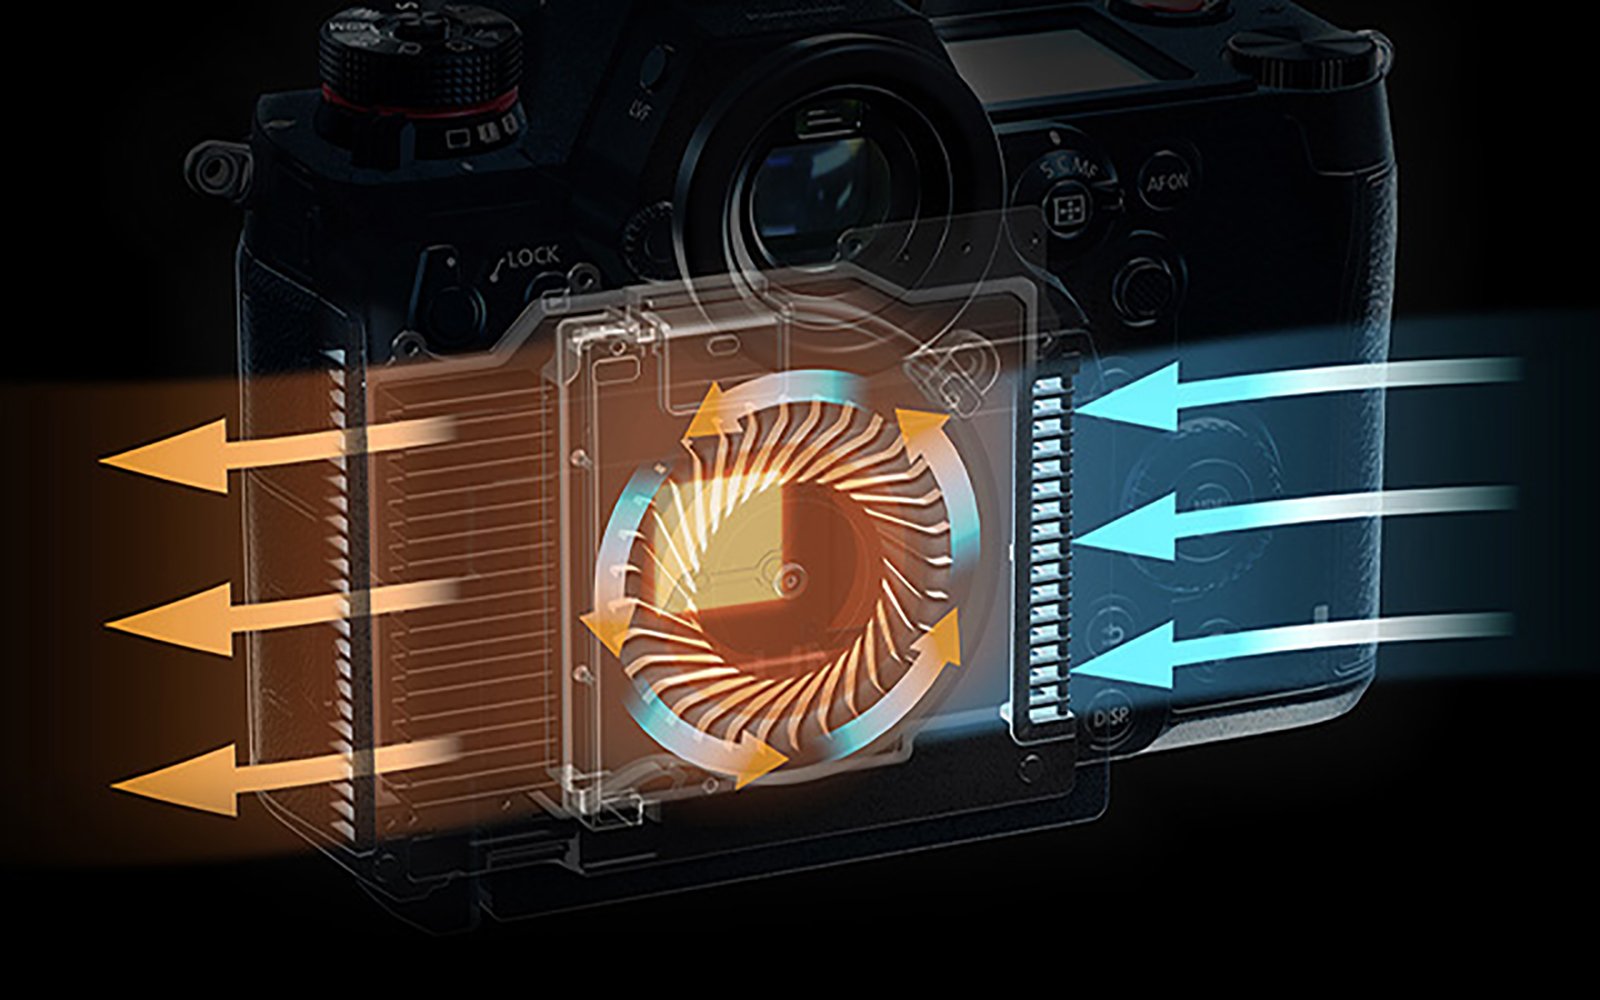 Sony a7S III May Shoot 4K/120p and Use a Built-in Cooling Fan: Report